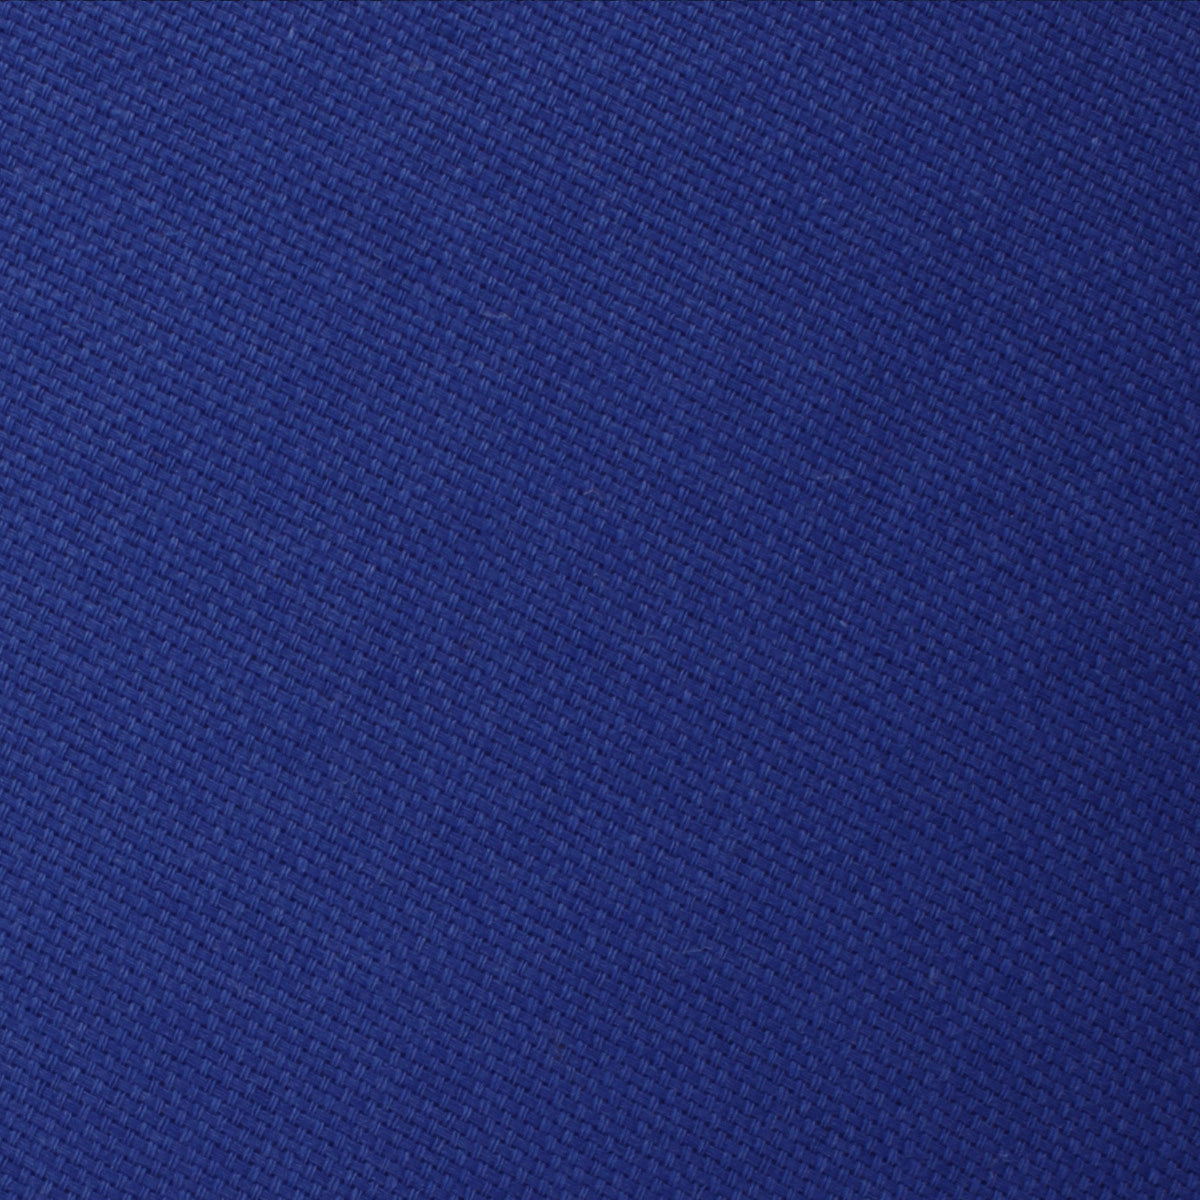 Cobalt Blue Linen Skinny Tie Fabric